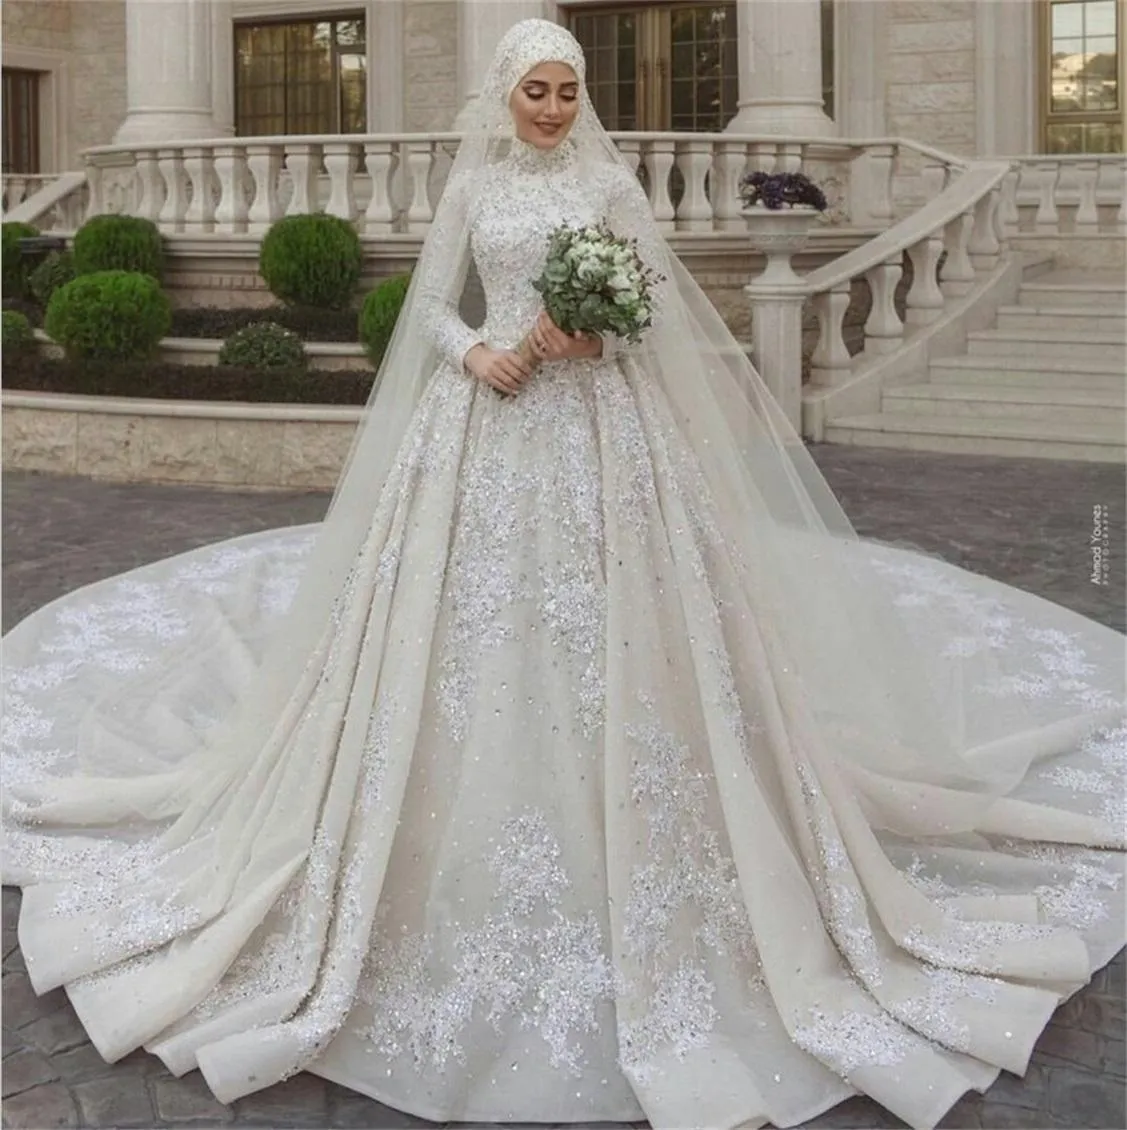 Luxo muçulmanos vestidos de noiva pescoço alto Lace mangas compridas lantejoulas Beads Appliqued vestido de casamento com véu Custom Made Vestidos de novia